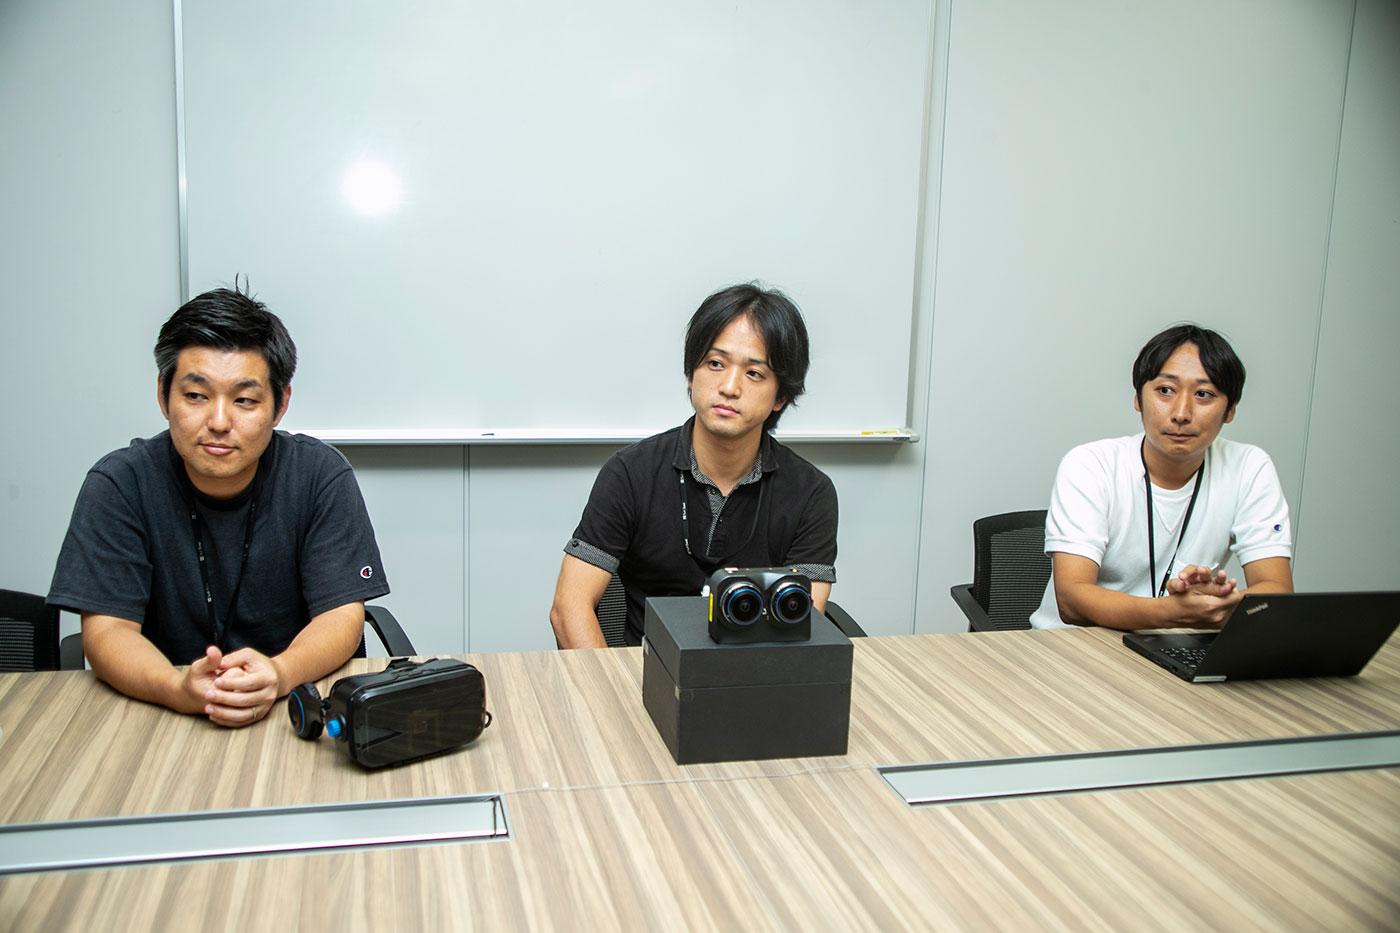 （写真左から）五十嵐和夫さん（VR担当：新規事業開発室 VR推進）、藤田誠司さん（VR担当：デバイス技術本部技術開発統括部）、新井英成さん（全体統括：コミュニケーション本部クリエイティブ部）